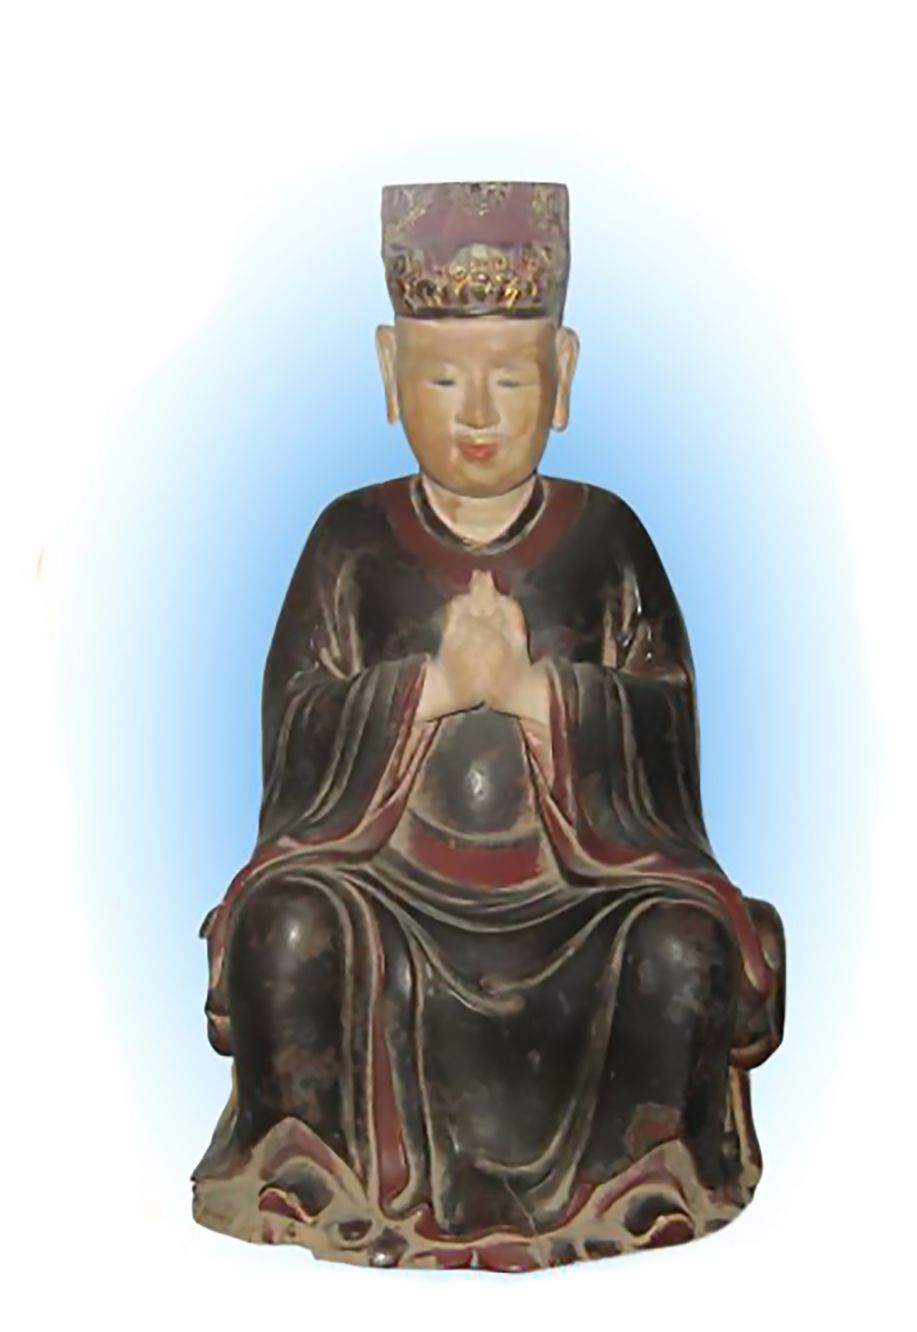 Tương truyền, đây là tượng tạc chân dung Thiền sư Tuệ Tĩnh. Ảnh: Tư liệu